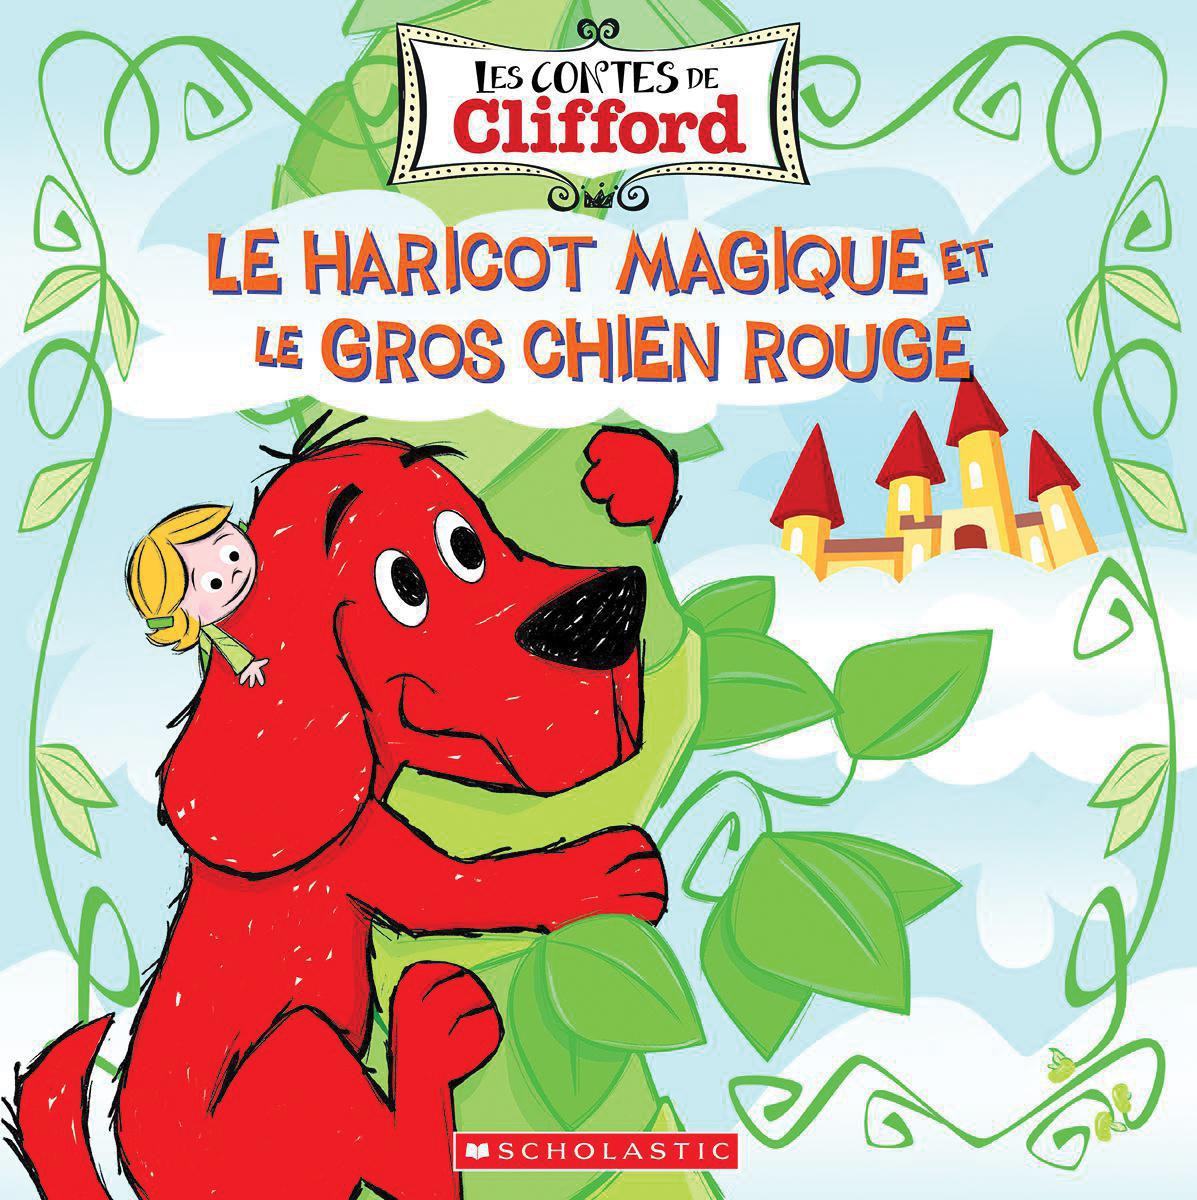  Les contes de Clifford : Le haricot magique et le gros chien rouge 